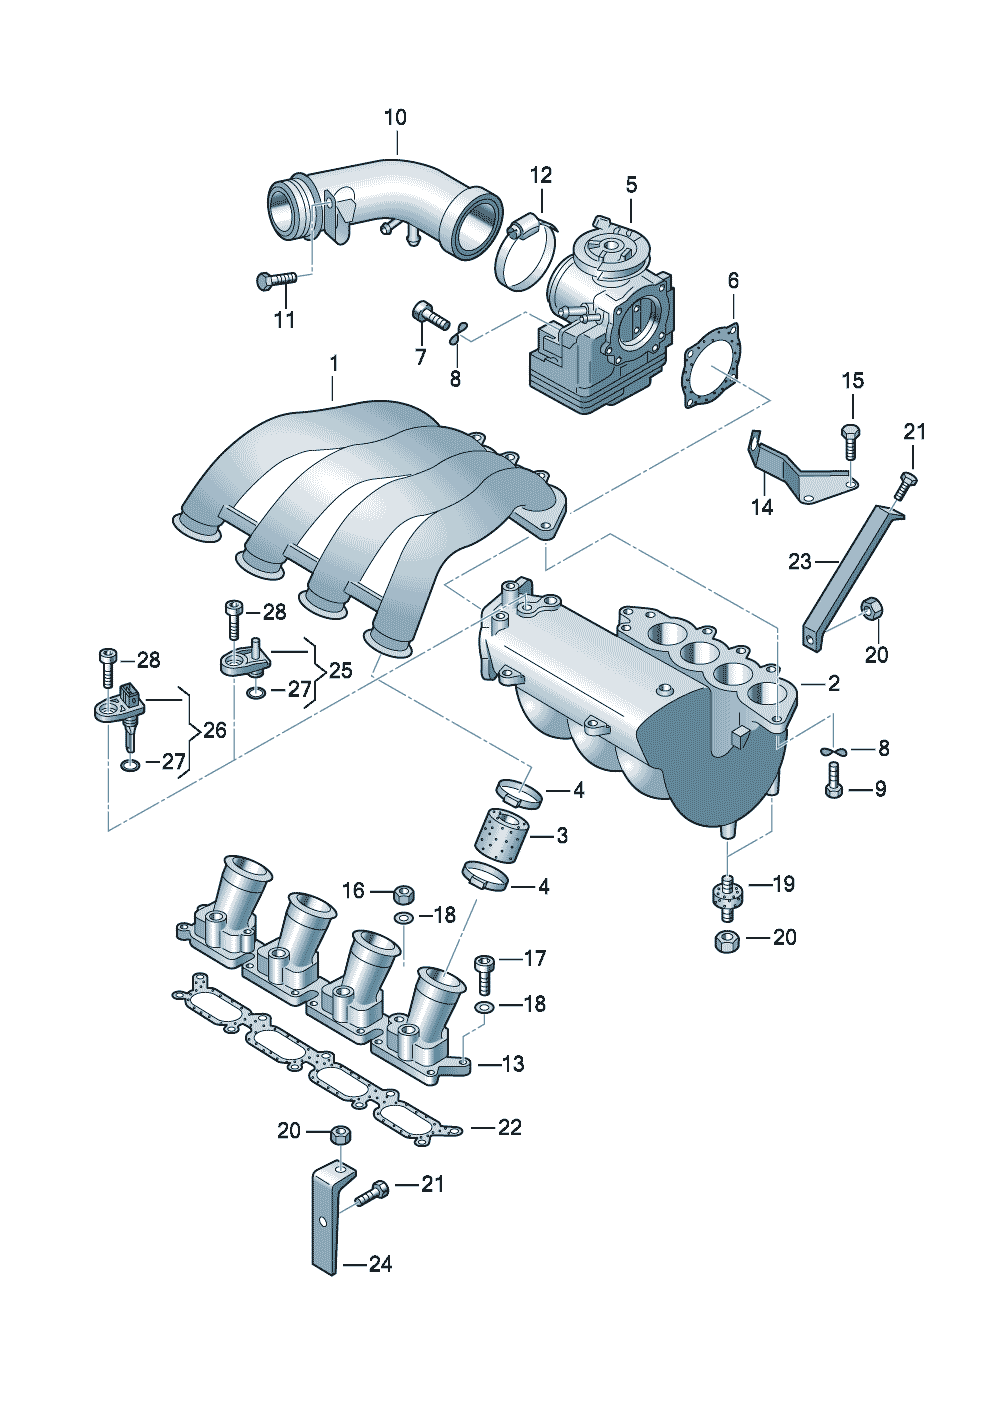 Throttle valve control elementIntake manifold 1.8ltr. - Audi A6/Avant - a6